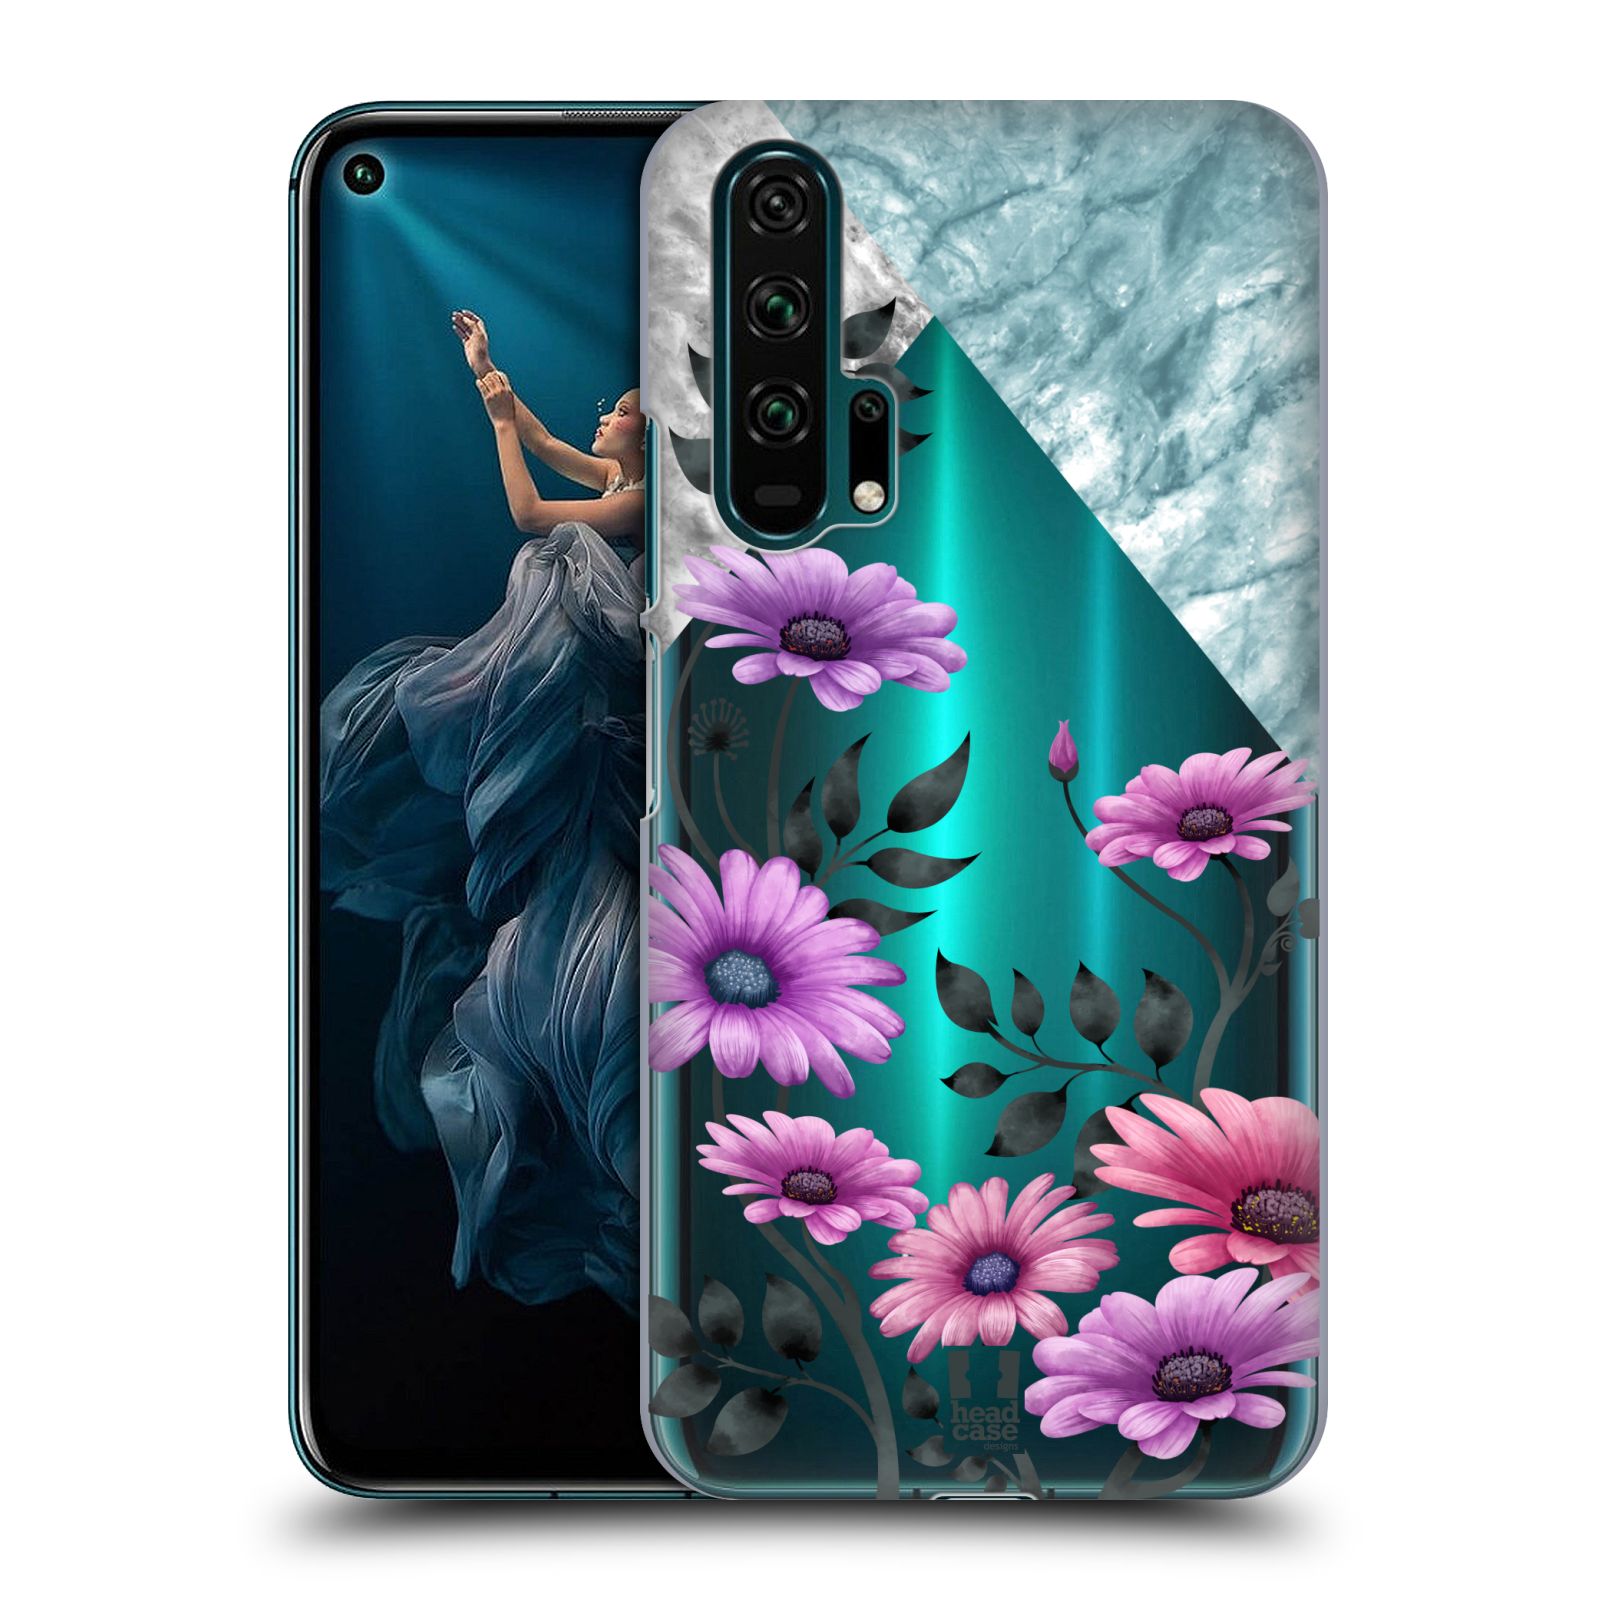 Pouzdro na mobil Honor 20 PRO - HEAD CASE - květiny hvězdnice, Aster fialová a modrá